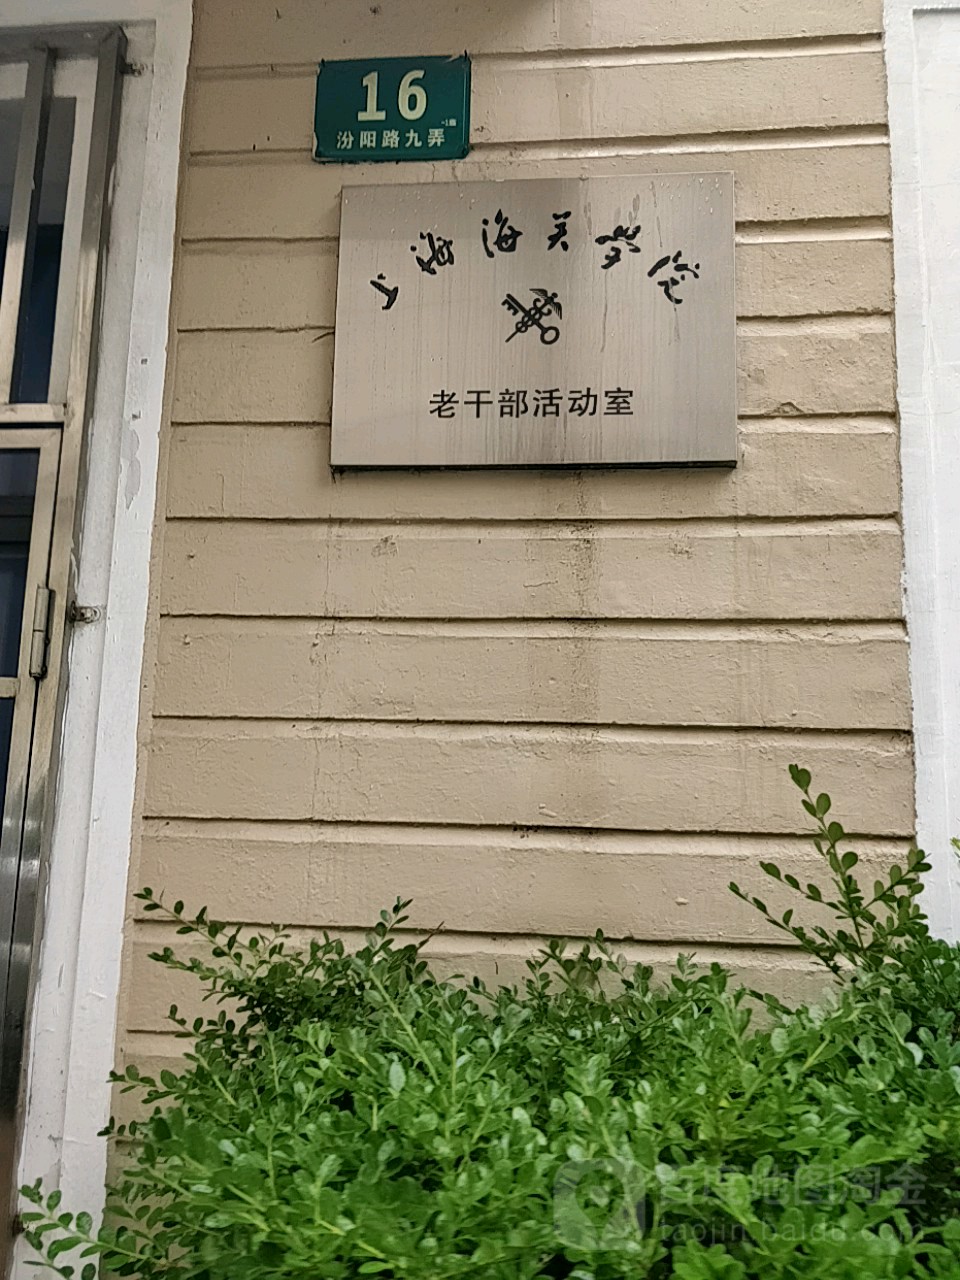 价格,团购,优惠,上海海关学院老干部活动室在哪,怎么走_上海生活服务